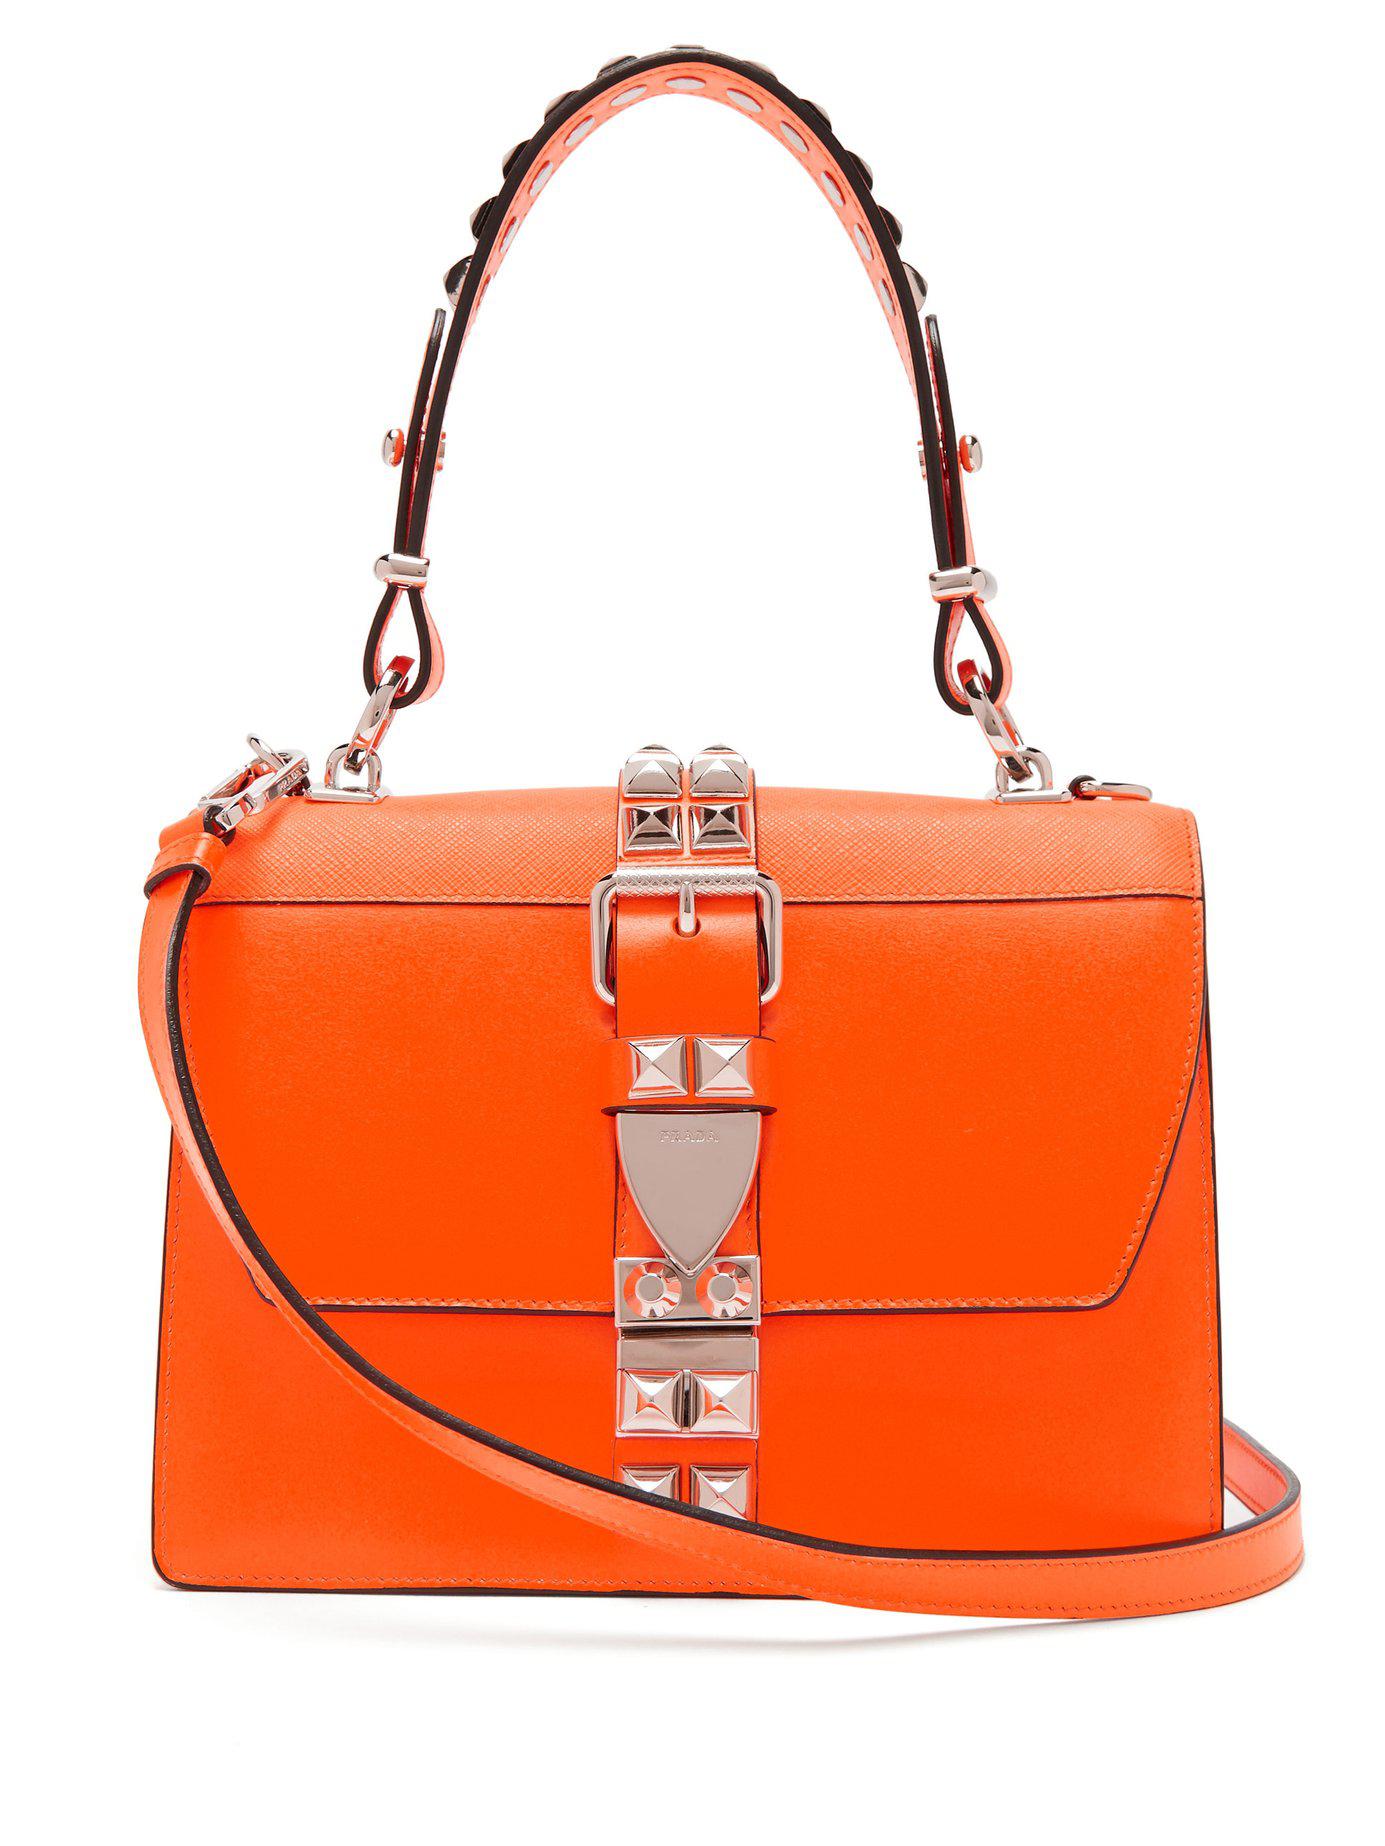 Prada Elektra Studded Leather Shoulder Bag in Orange - Lyst